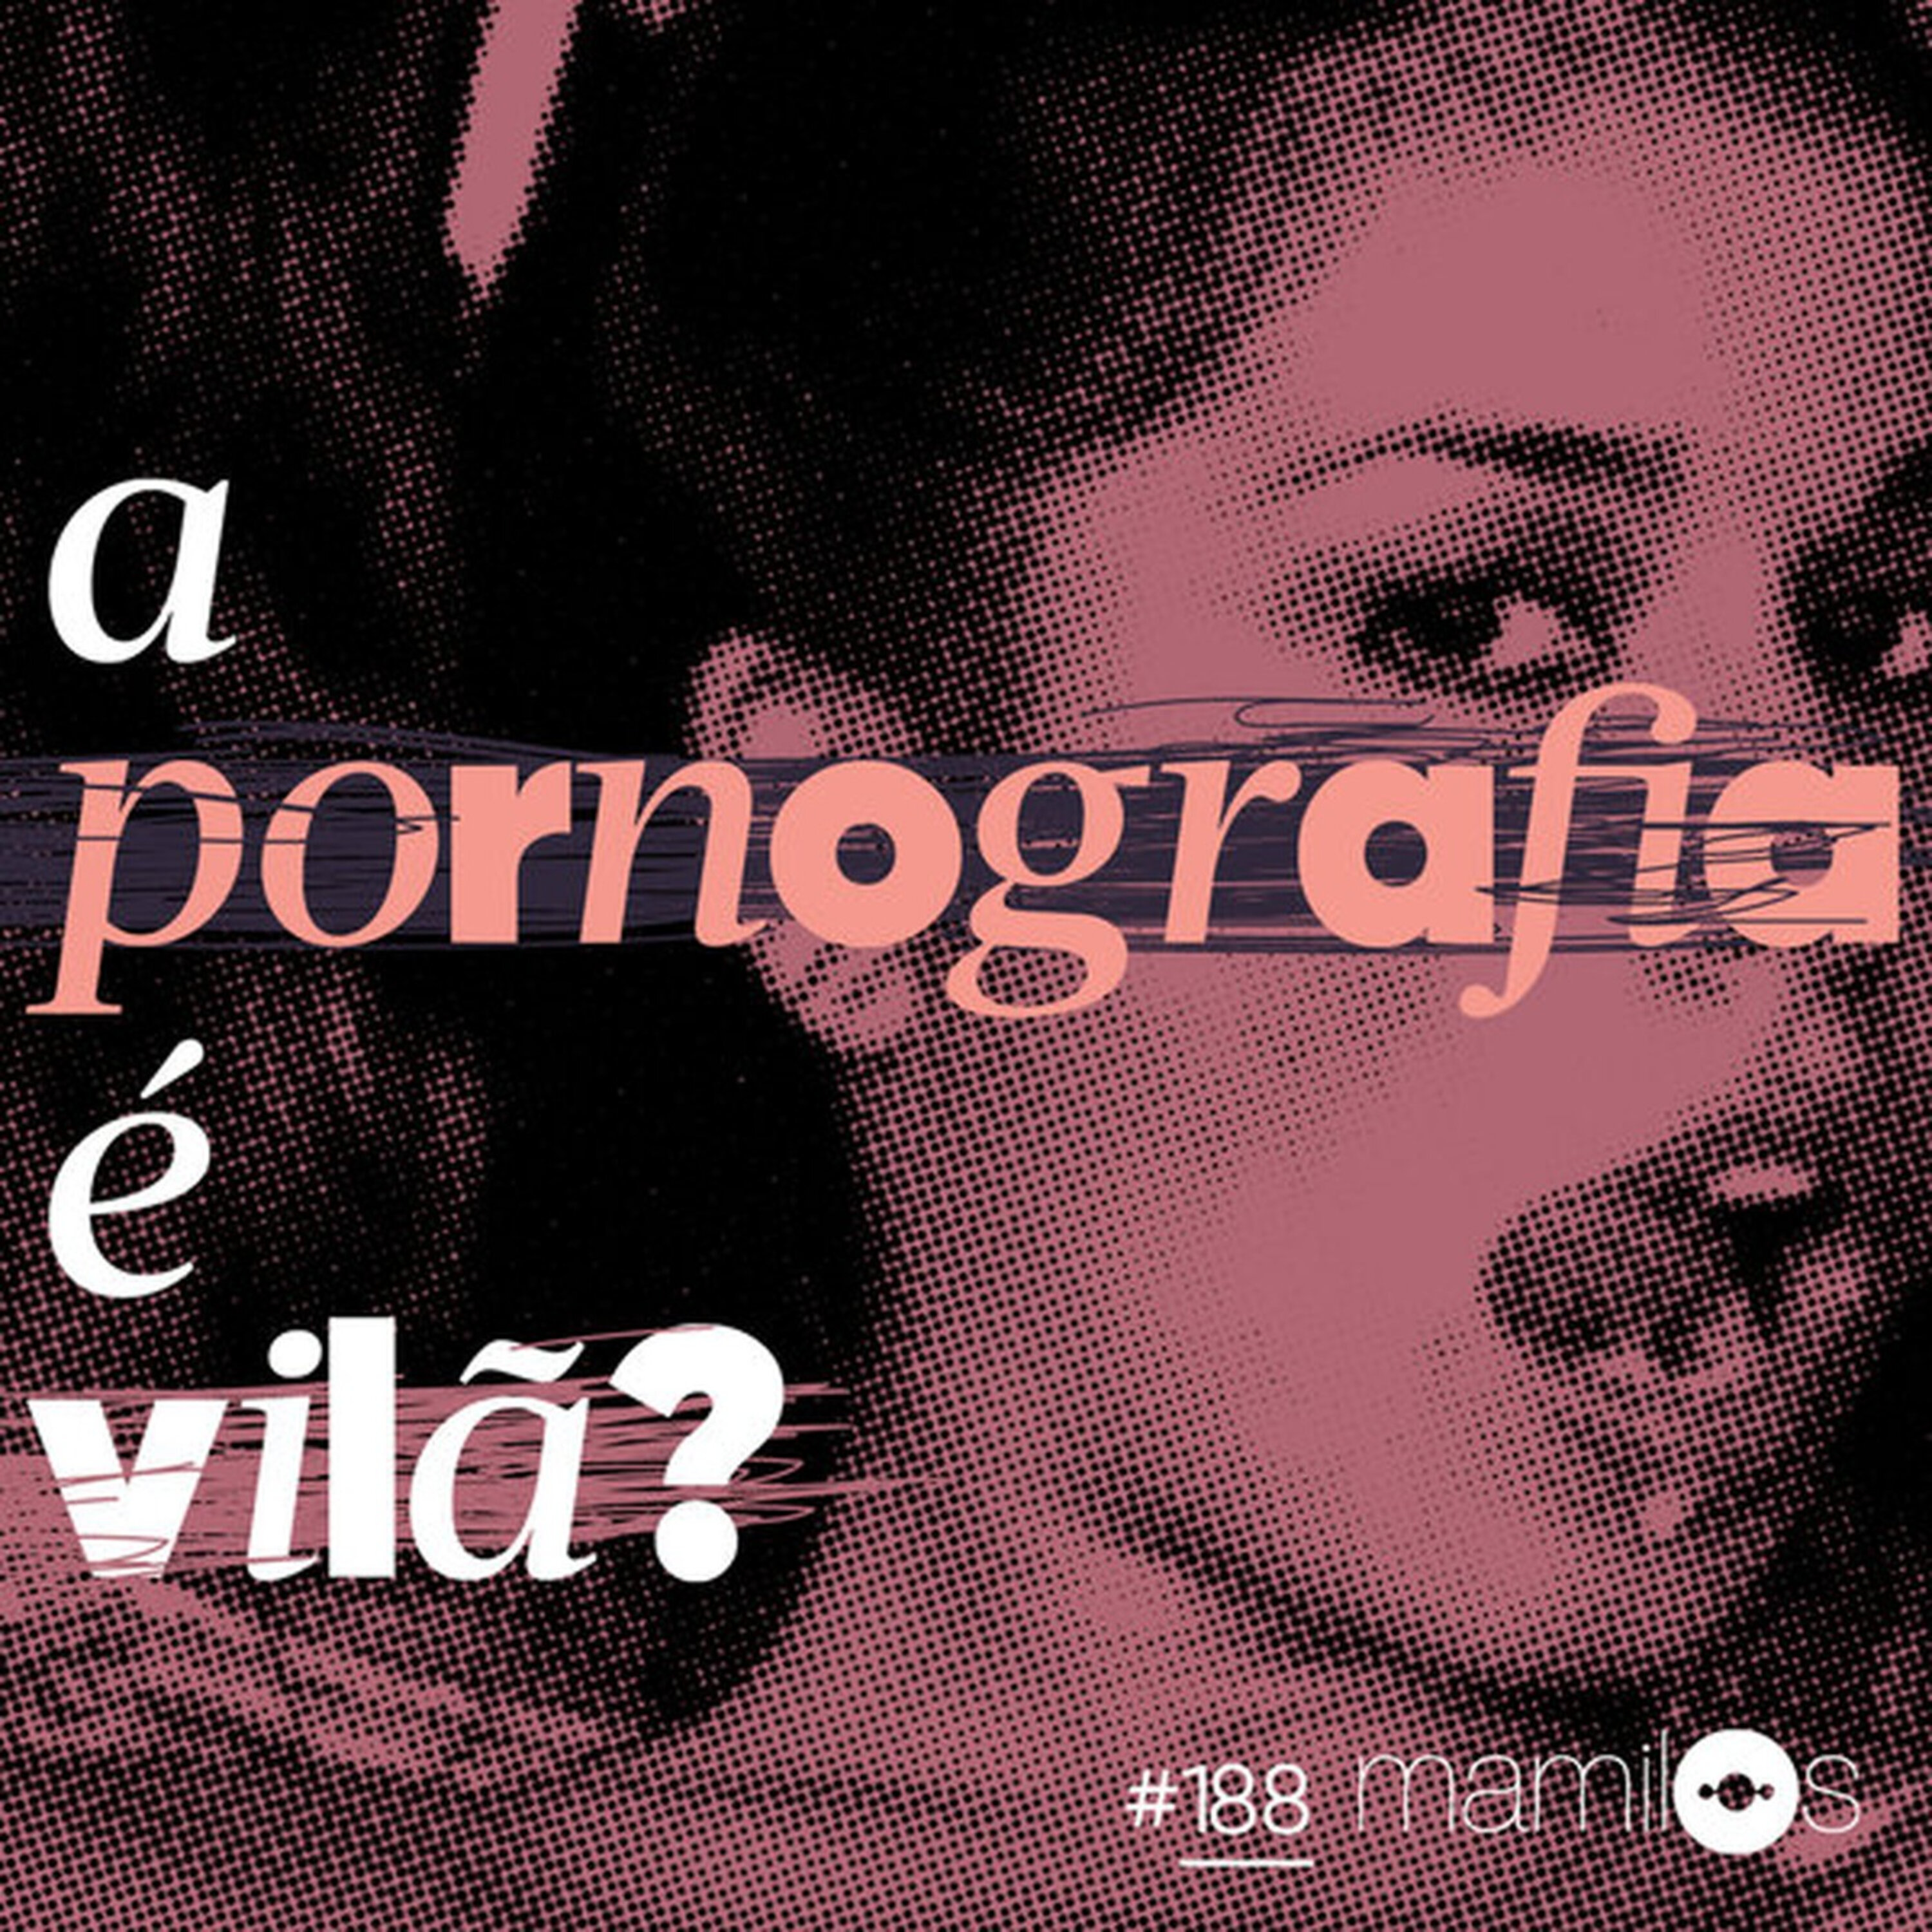 A pornografia é vilã?